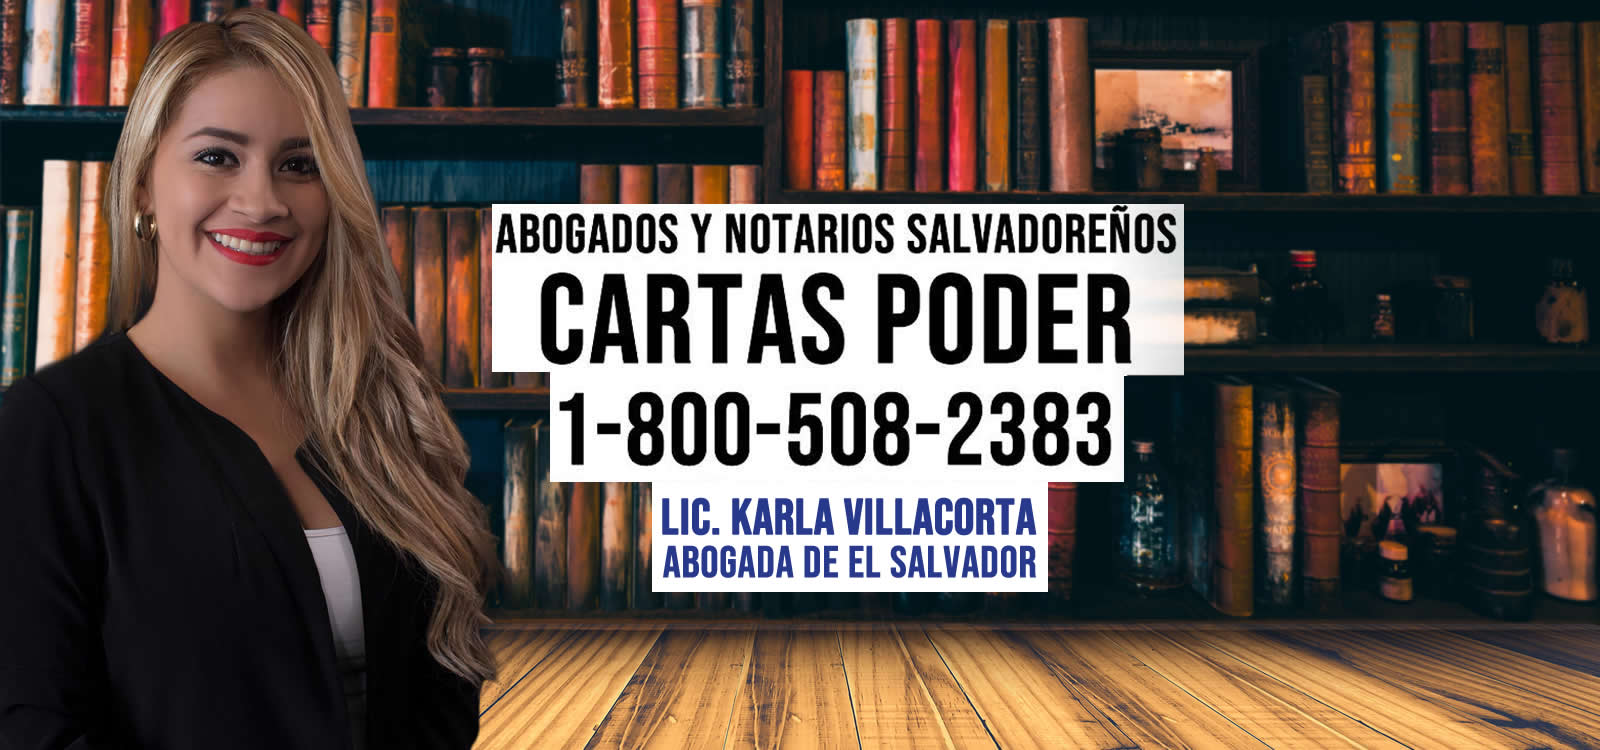 Abogados para Cartas Poder El Salvador en Denver, Colorado